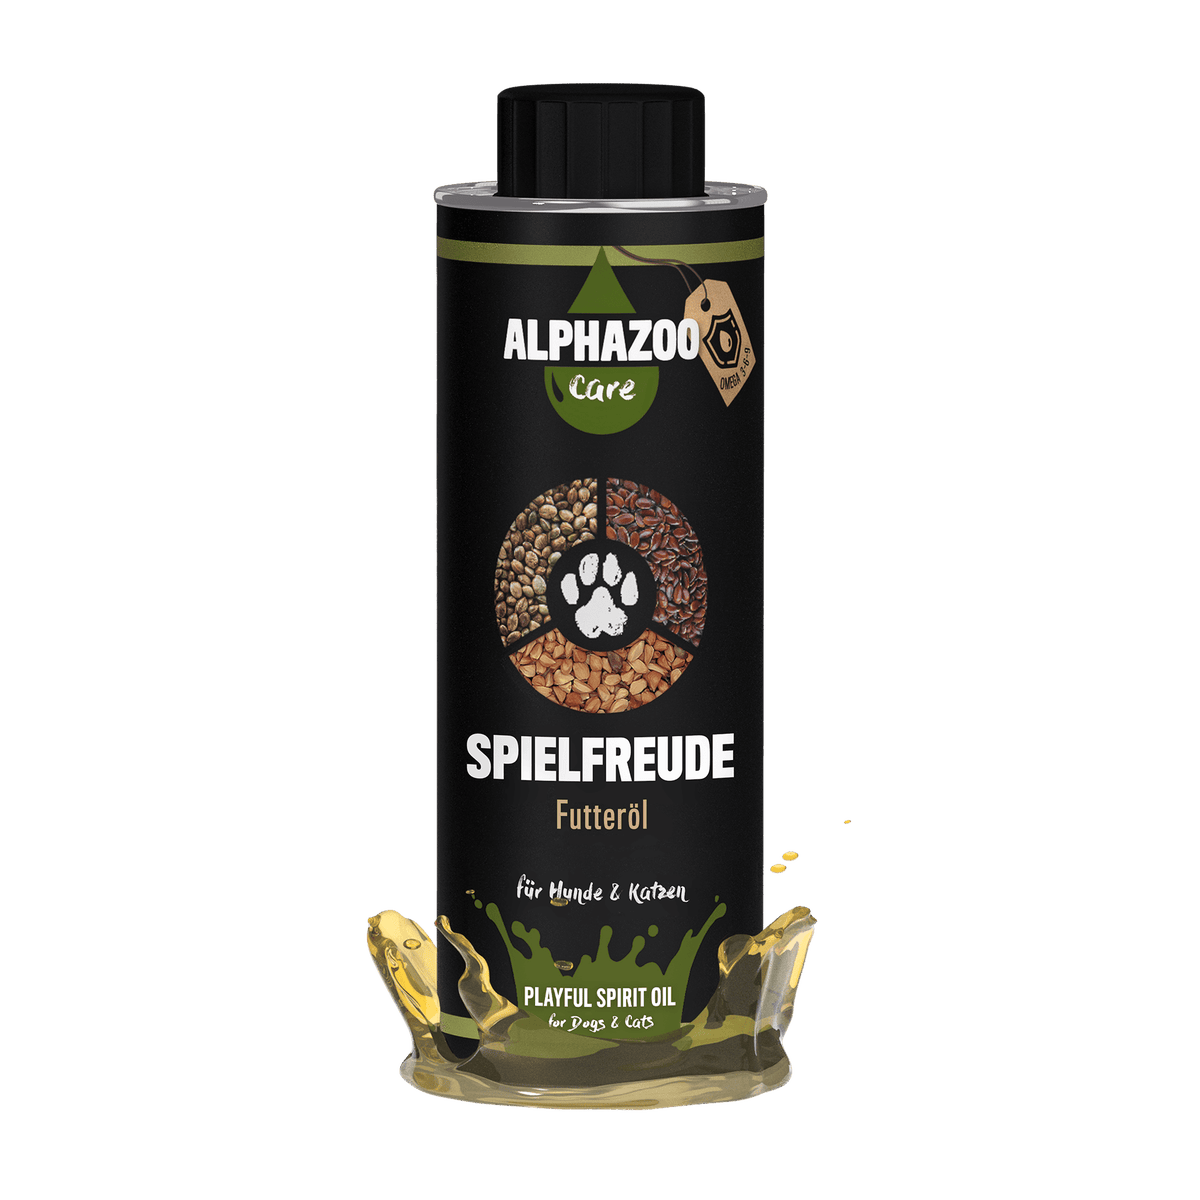 ALPHAZOO Spielfreude Futteröl 250ml für Hunde und Katzen I Öl für Agility und Bewegung